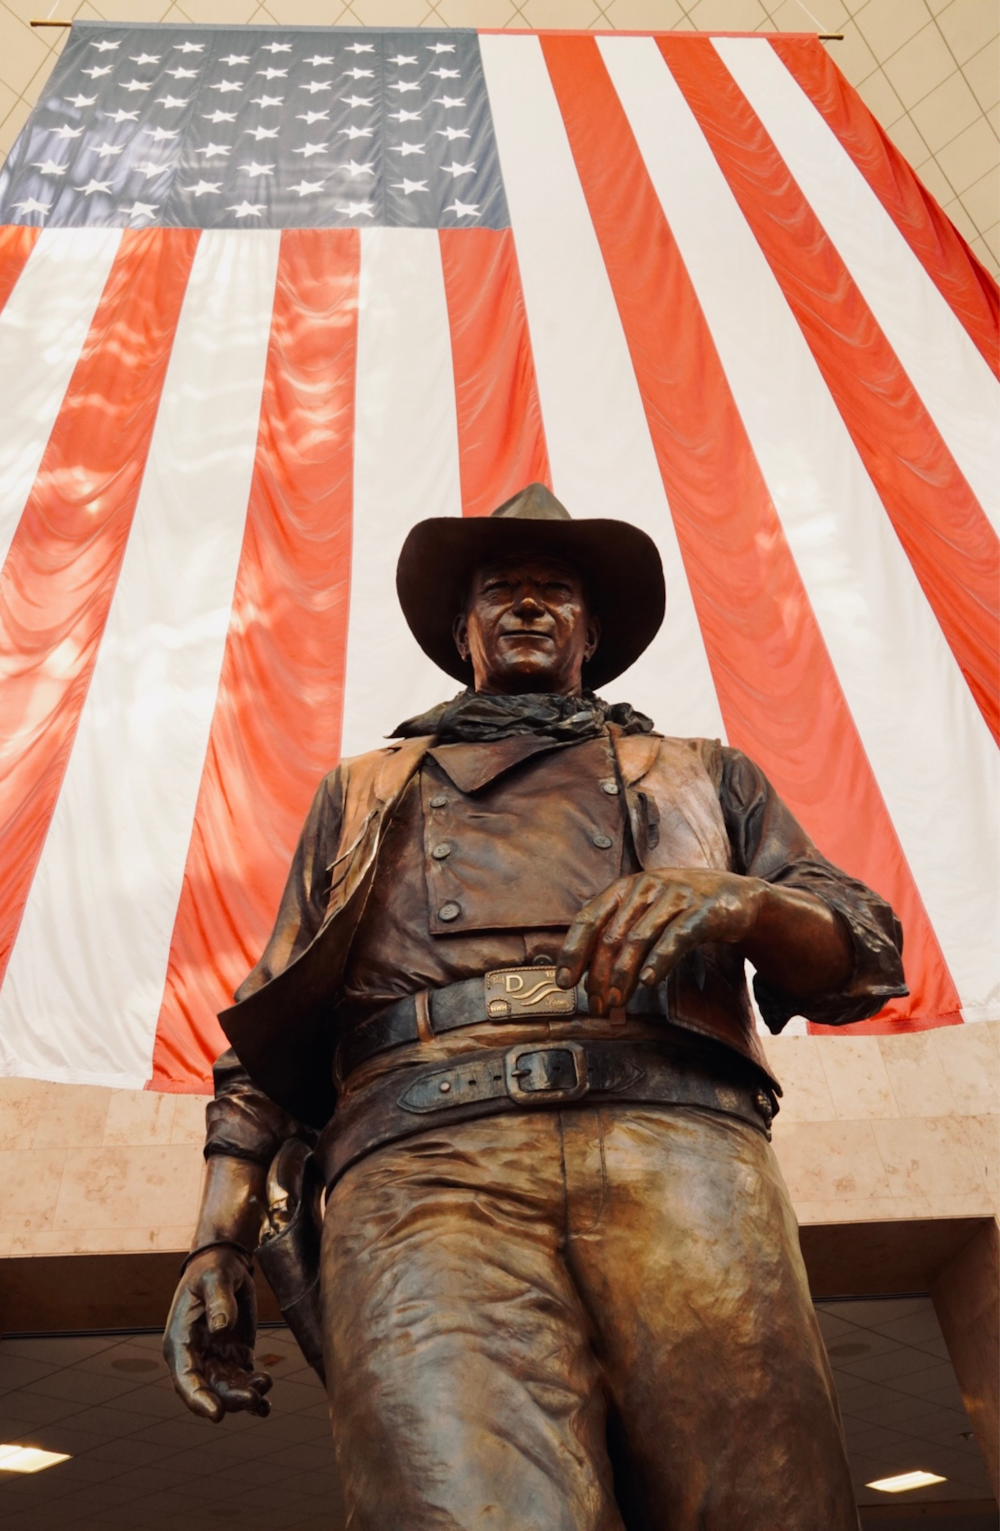 Una statua di un uomo con un cappello da cowboy con una bandiera americana sullo sfondo